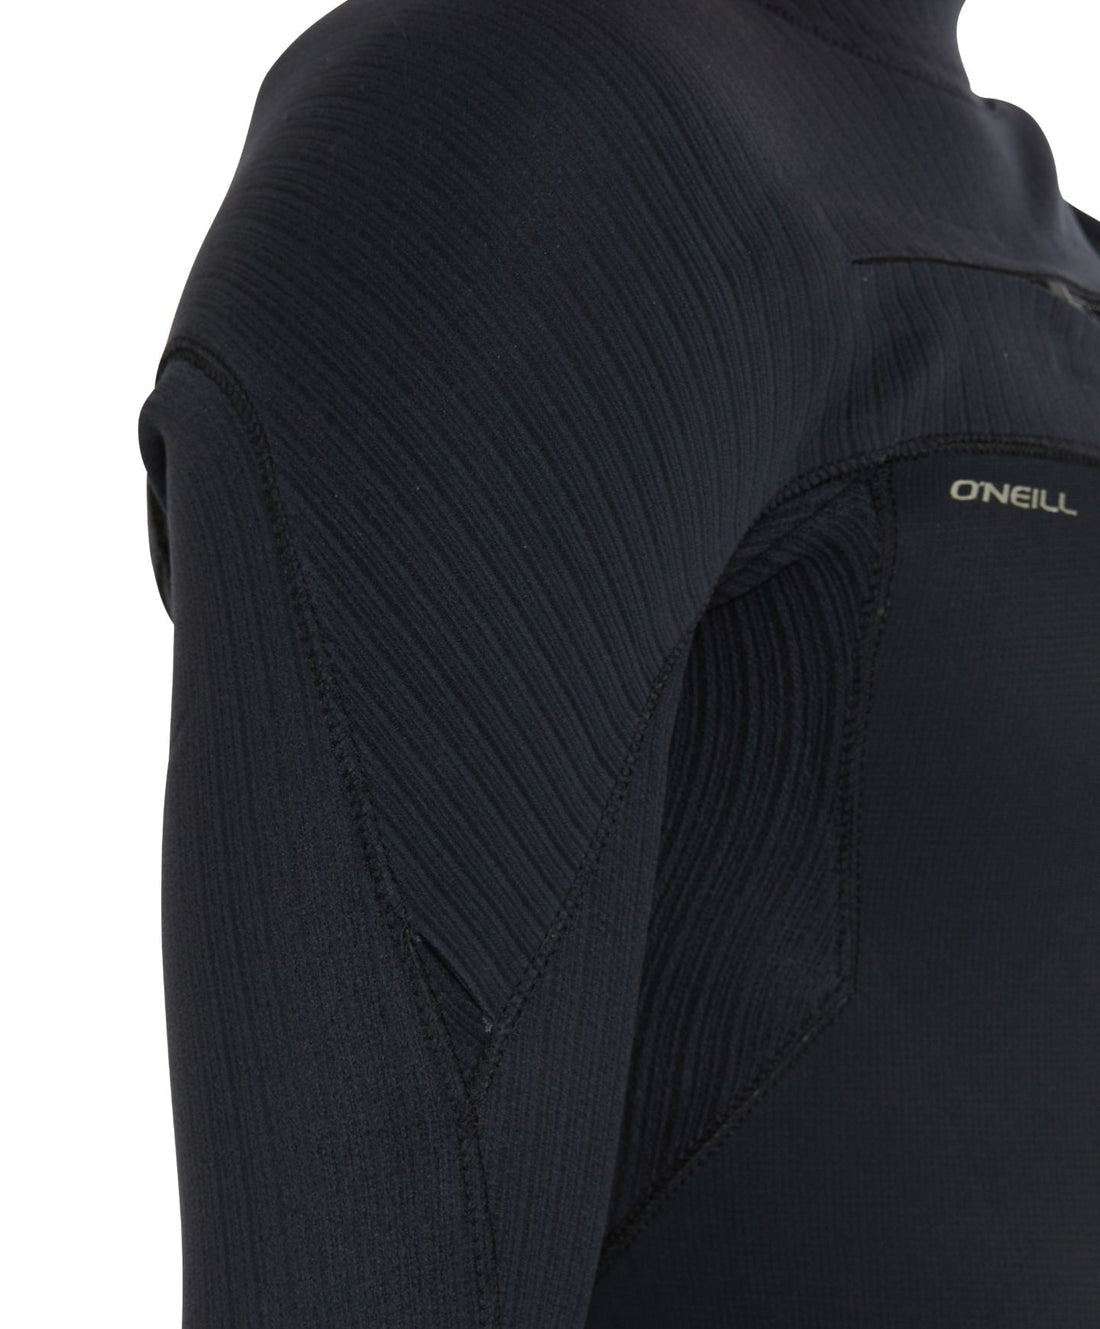 O'Neill HyperFreak 3/2+ Steamer Chest Zip Wetsuit